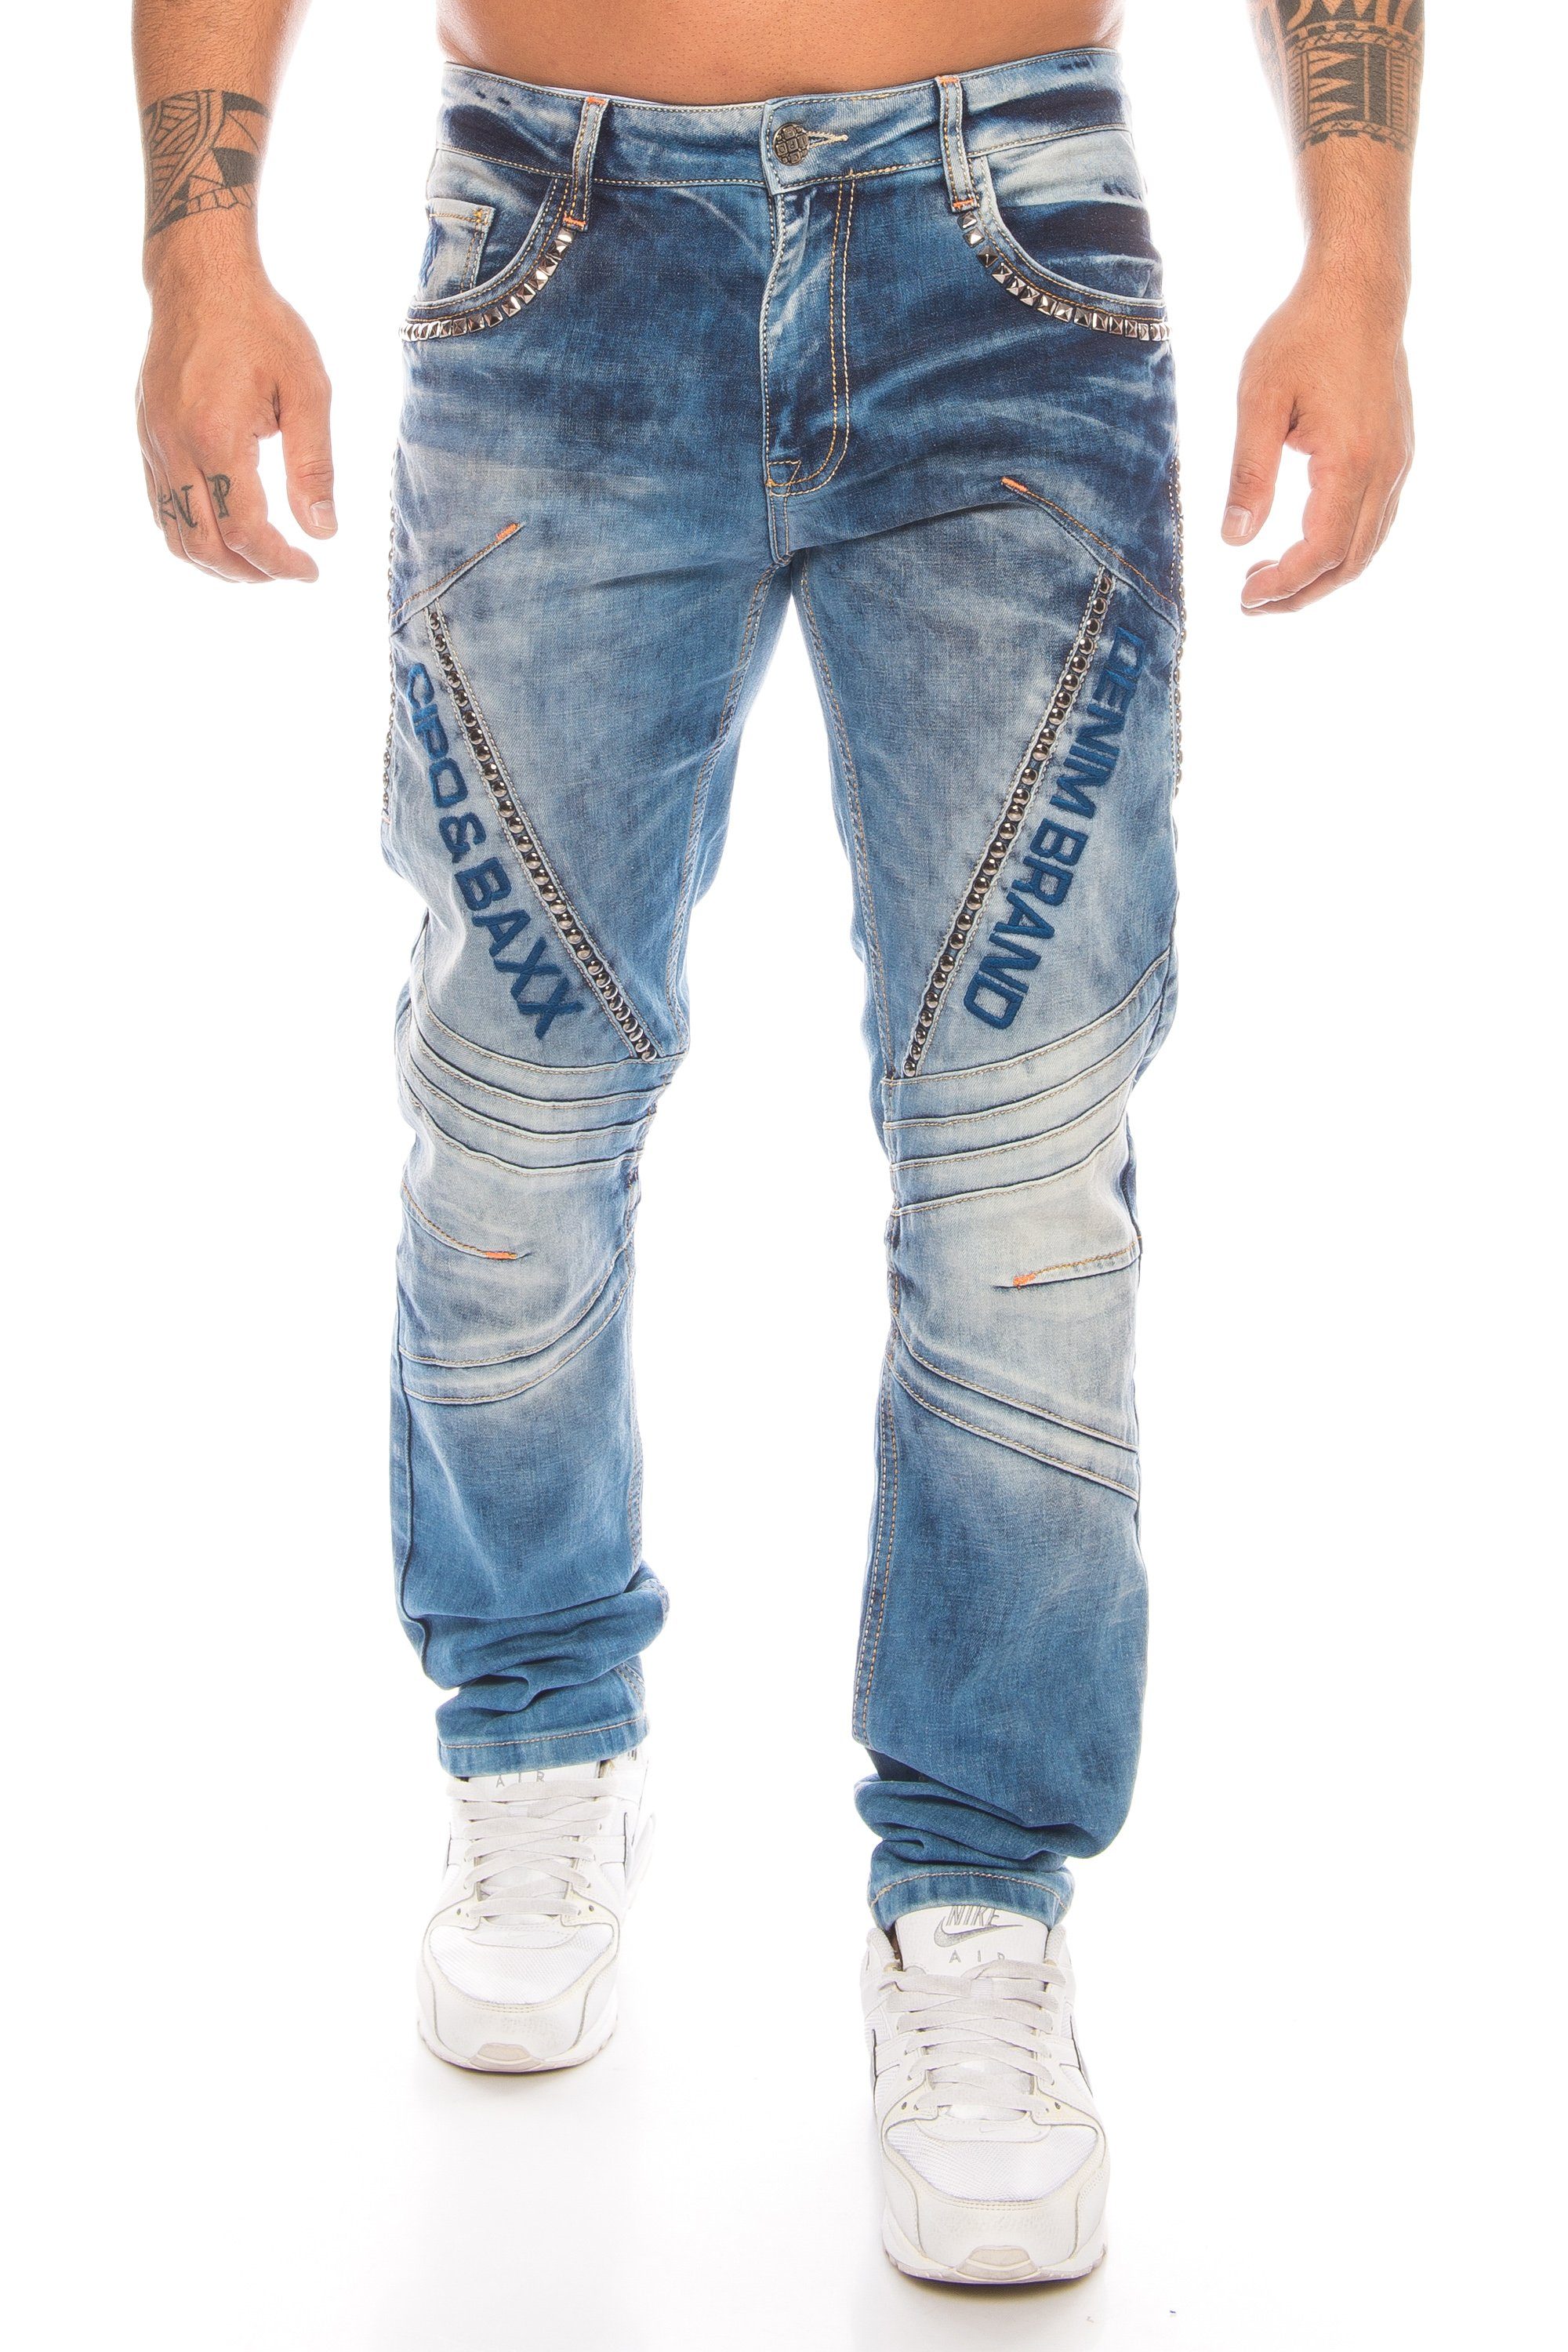 Cipo & Baxx Regular-fit-Jeans »Herren Jeans Hose im mit aufwendiger  Nietenverzierung und stylischer Labelschrift« Jeans Hose mit dem gewissen  Extra durch die Nietenverzierung online kaufen | OTTO